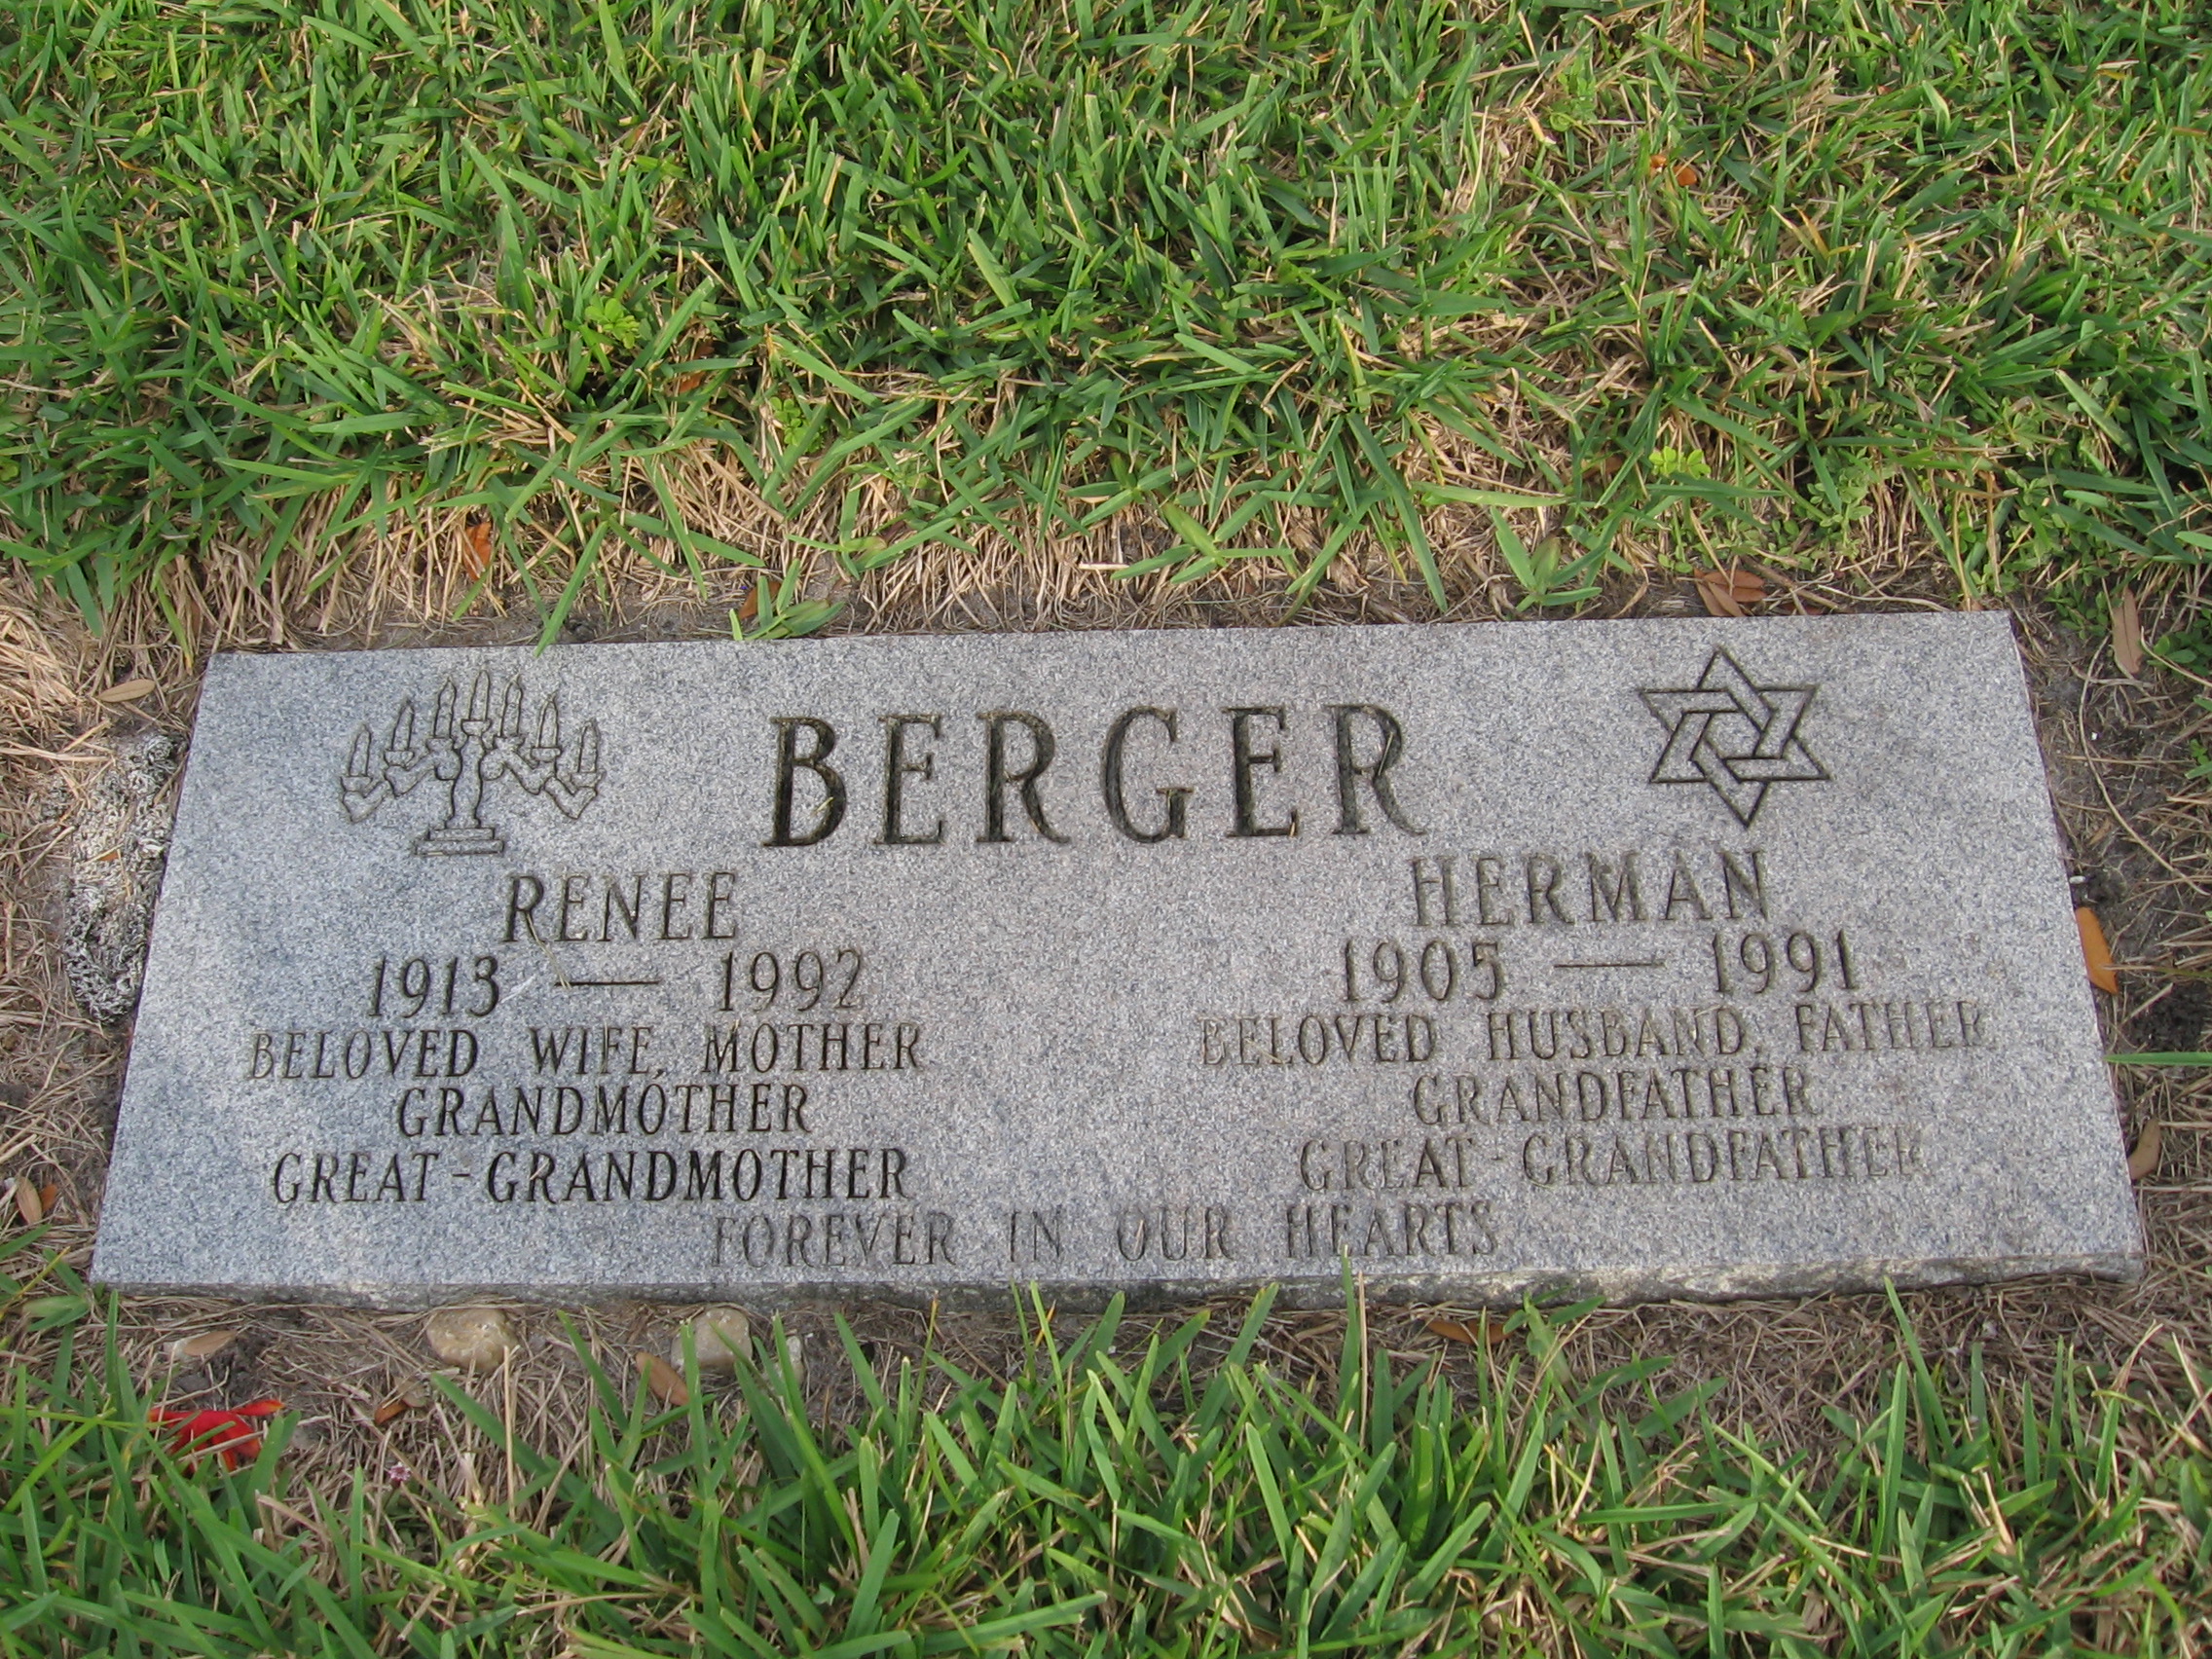 Herman Berger